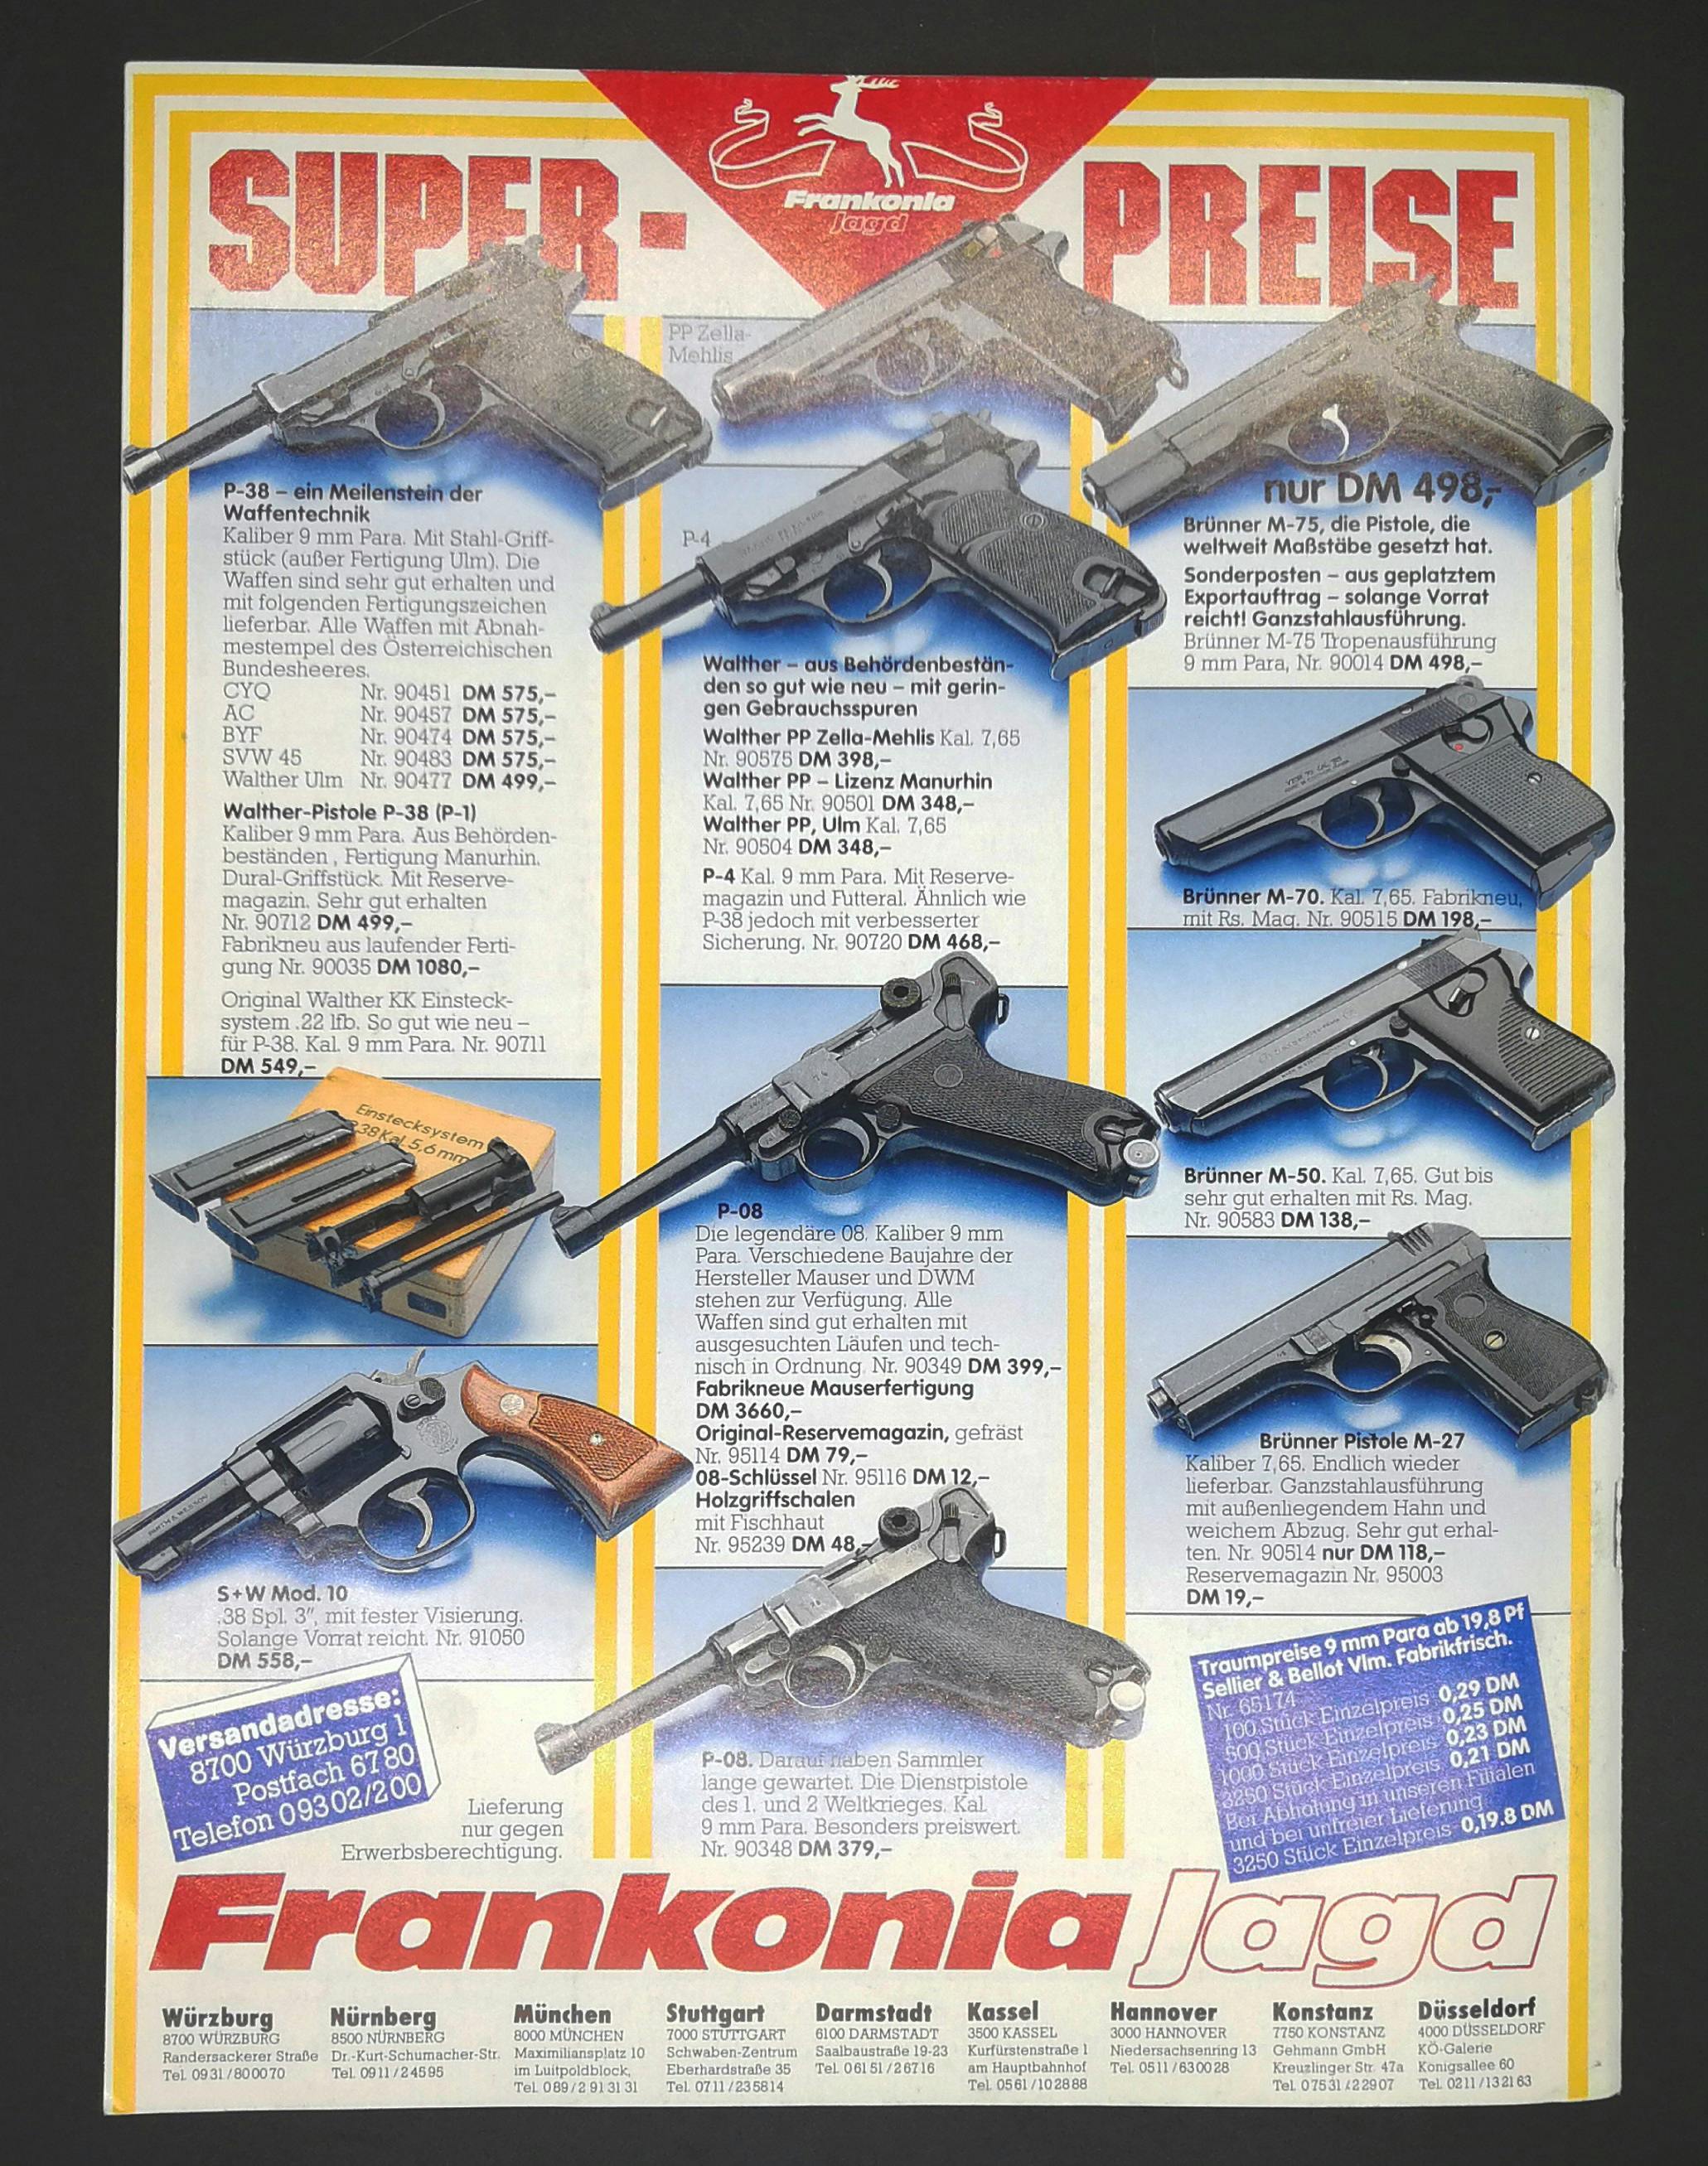 Bekannte Frank und Monika Werbung mit mehrheitlich deutschen und tschech(oslovak)ischen Pistolen.
